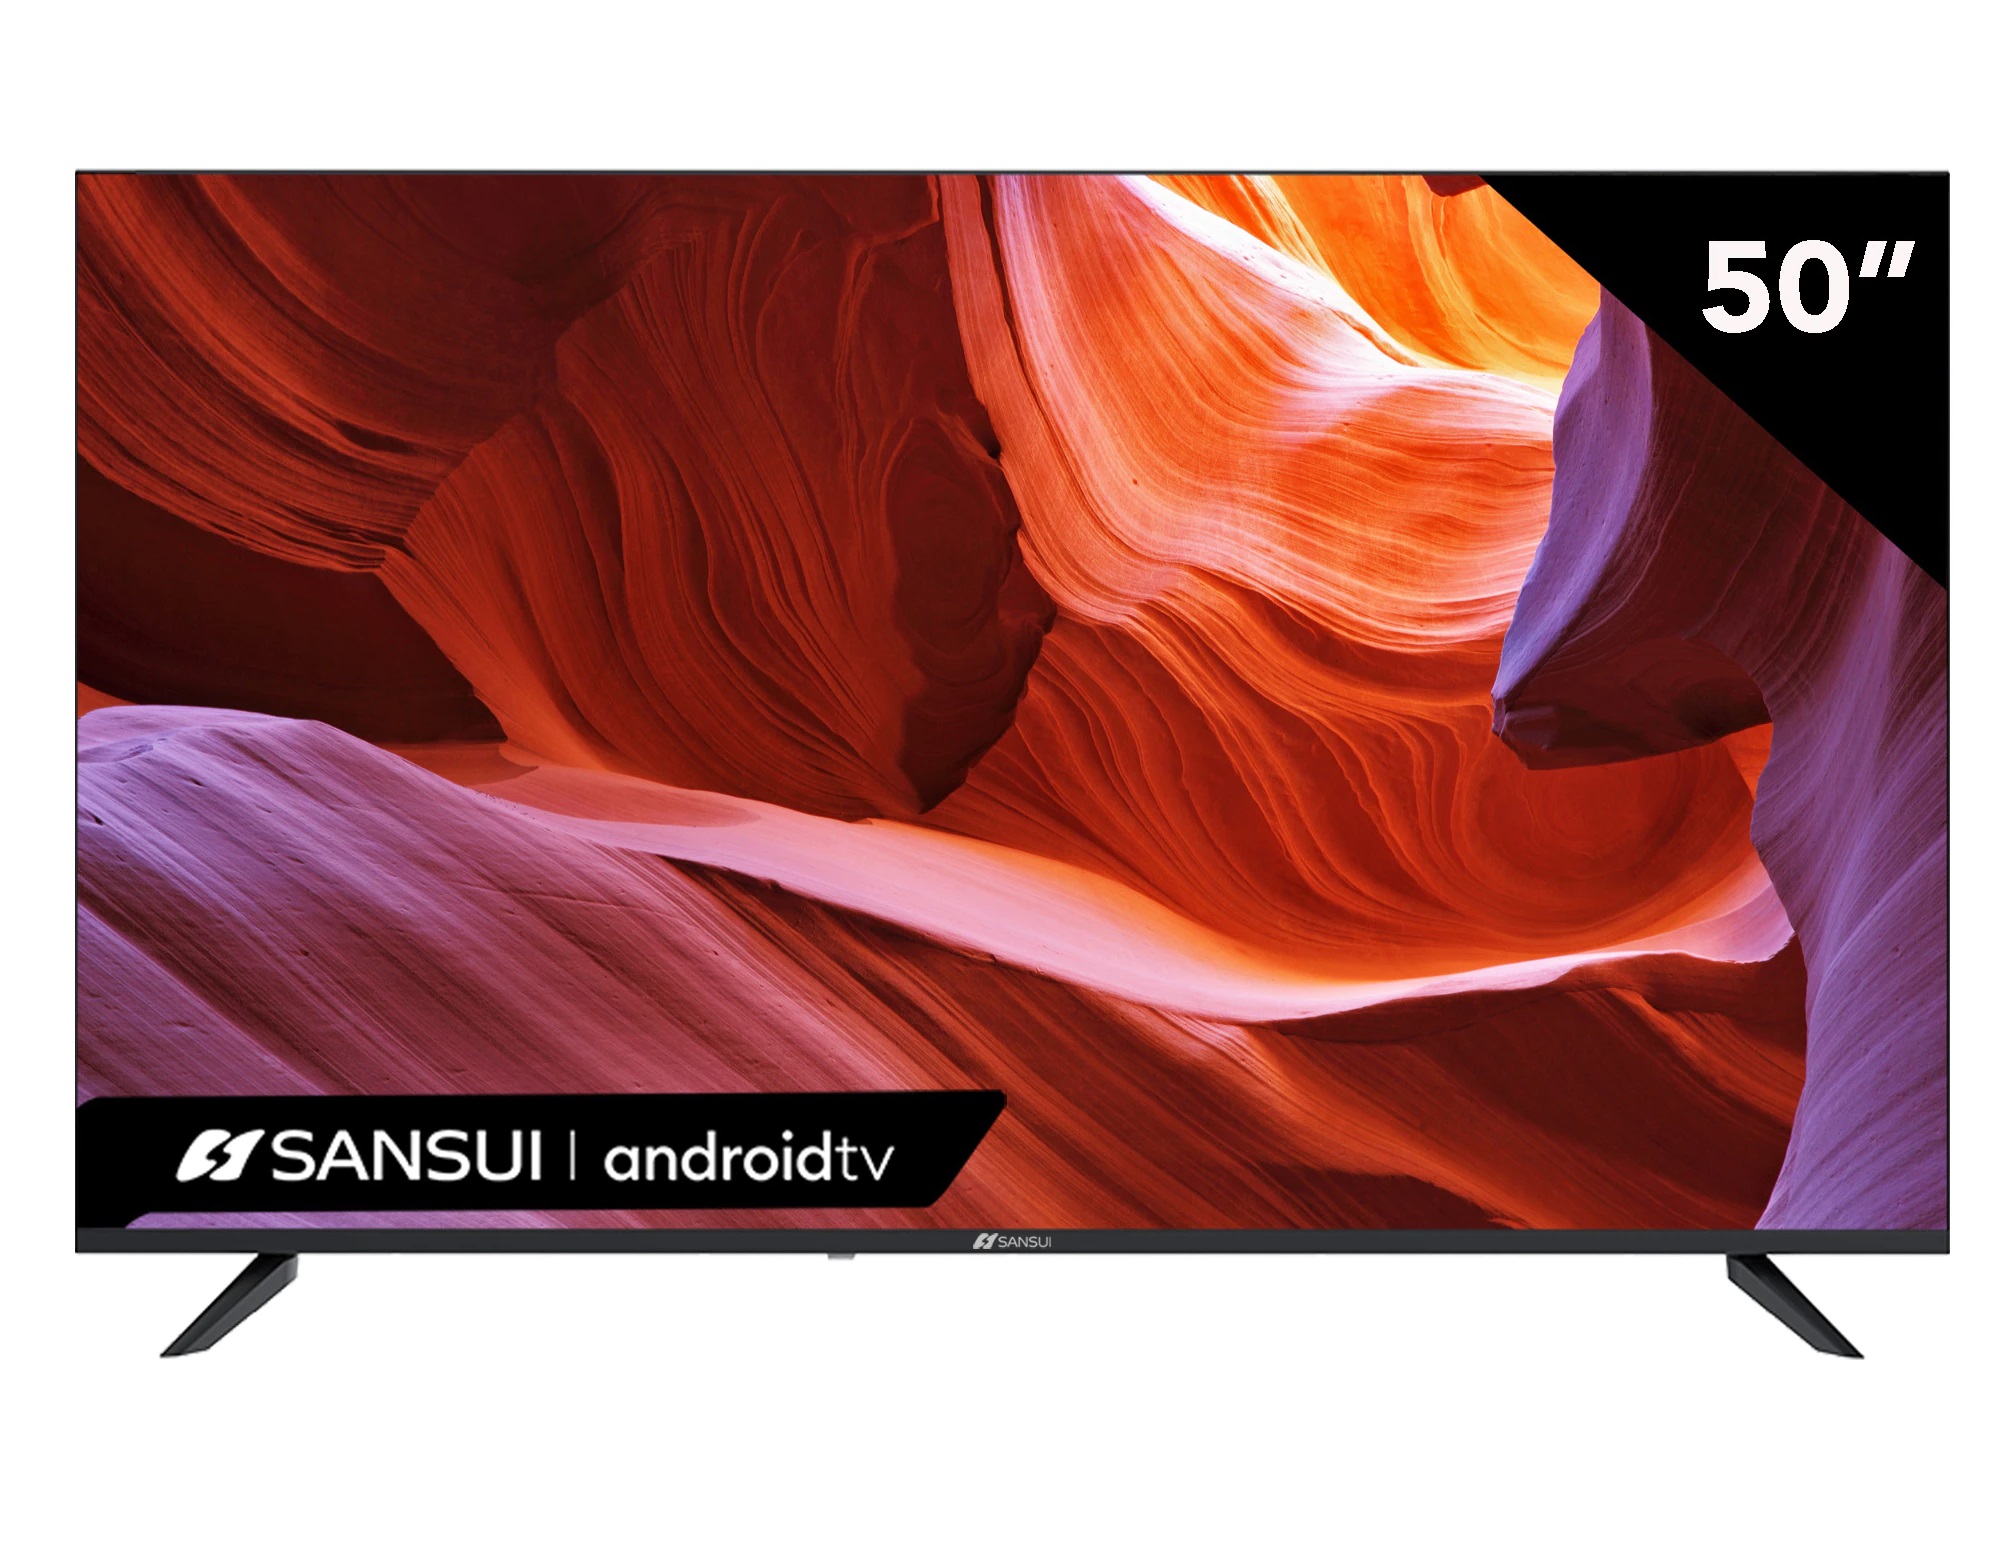 Pantalla SANSUI Smart TV Android TV 50" 4K, ULTRA HD SMX50V1UA CONTROL DE VOZ EN CONTROL REMOTO